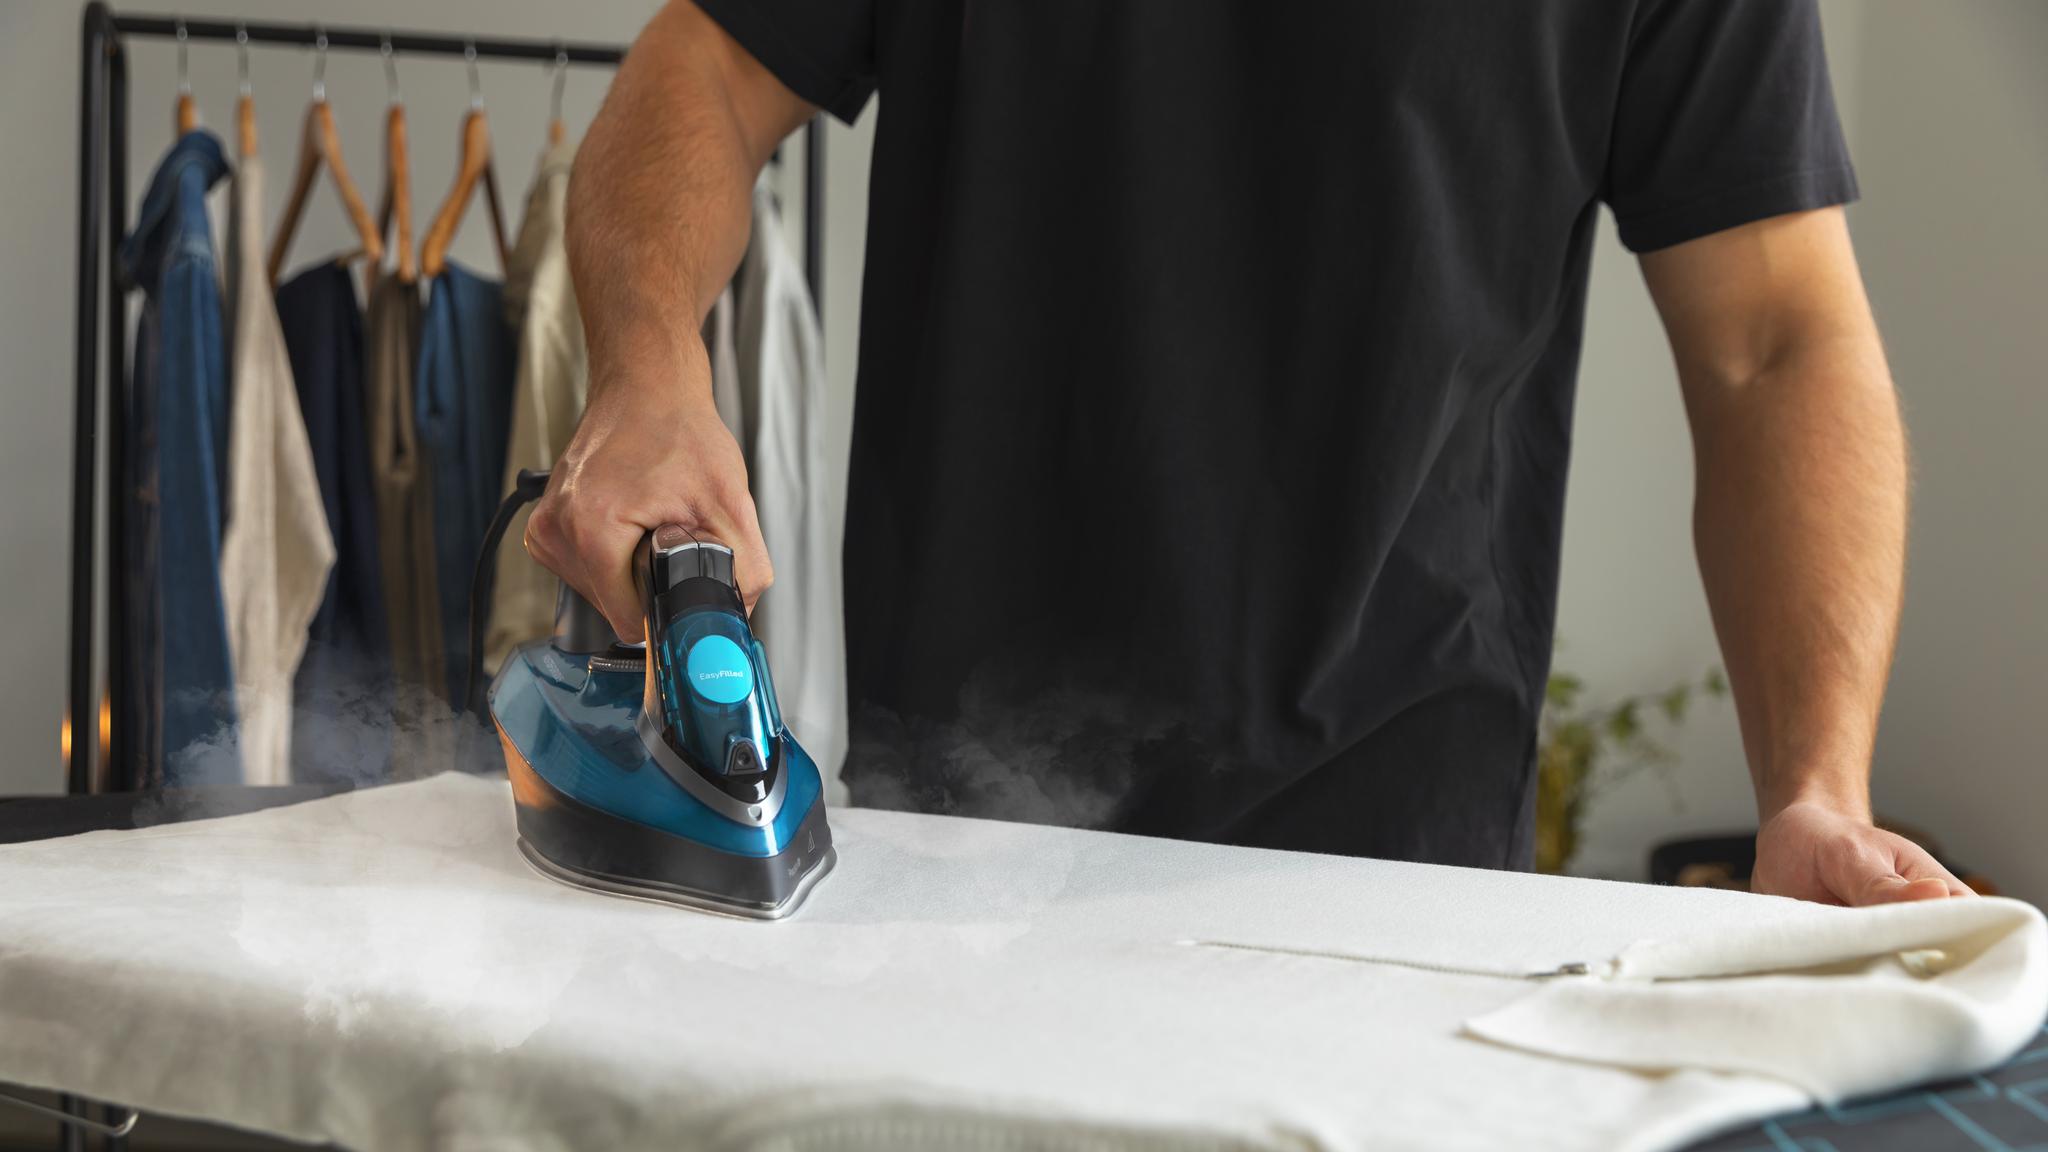 Turbo Slide Anti-Haft-Bügelsohle mit einem perfekten Gleiten. Innovative Technologie, die das Glätten über die Kleidungsstücke vereinfacht und ermöglicht ein sicheres und leichtes Bügeln.